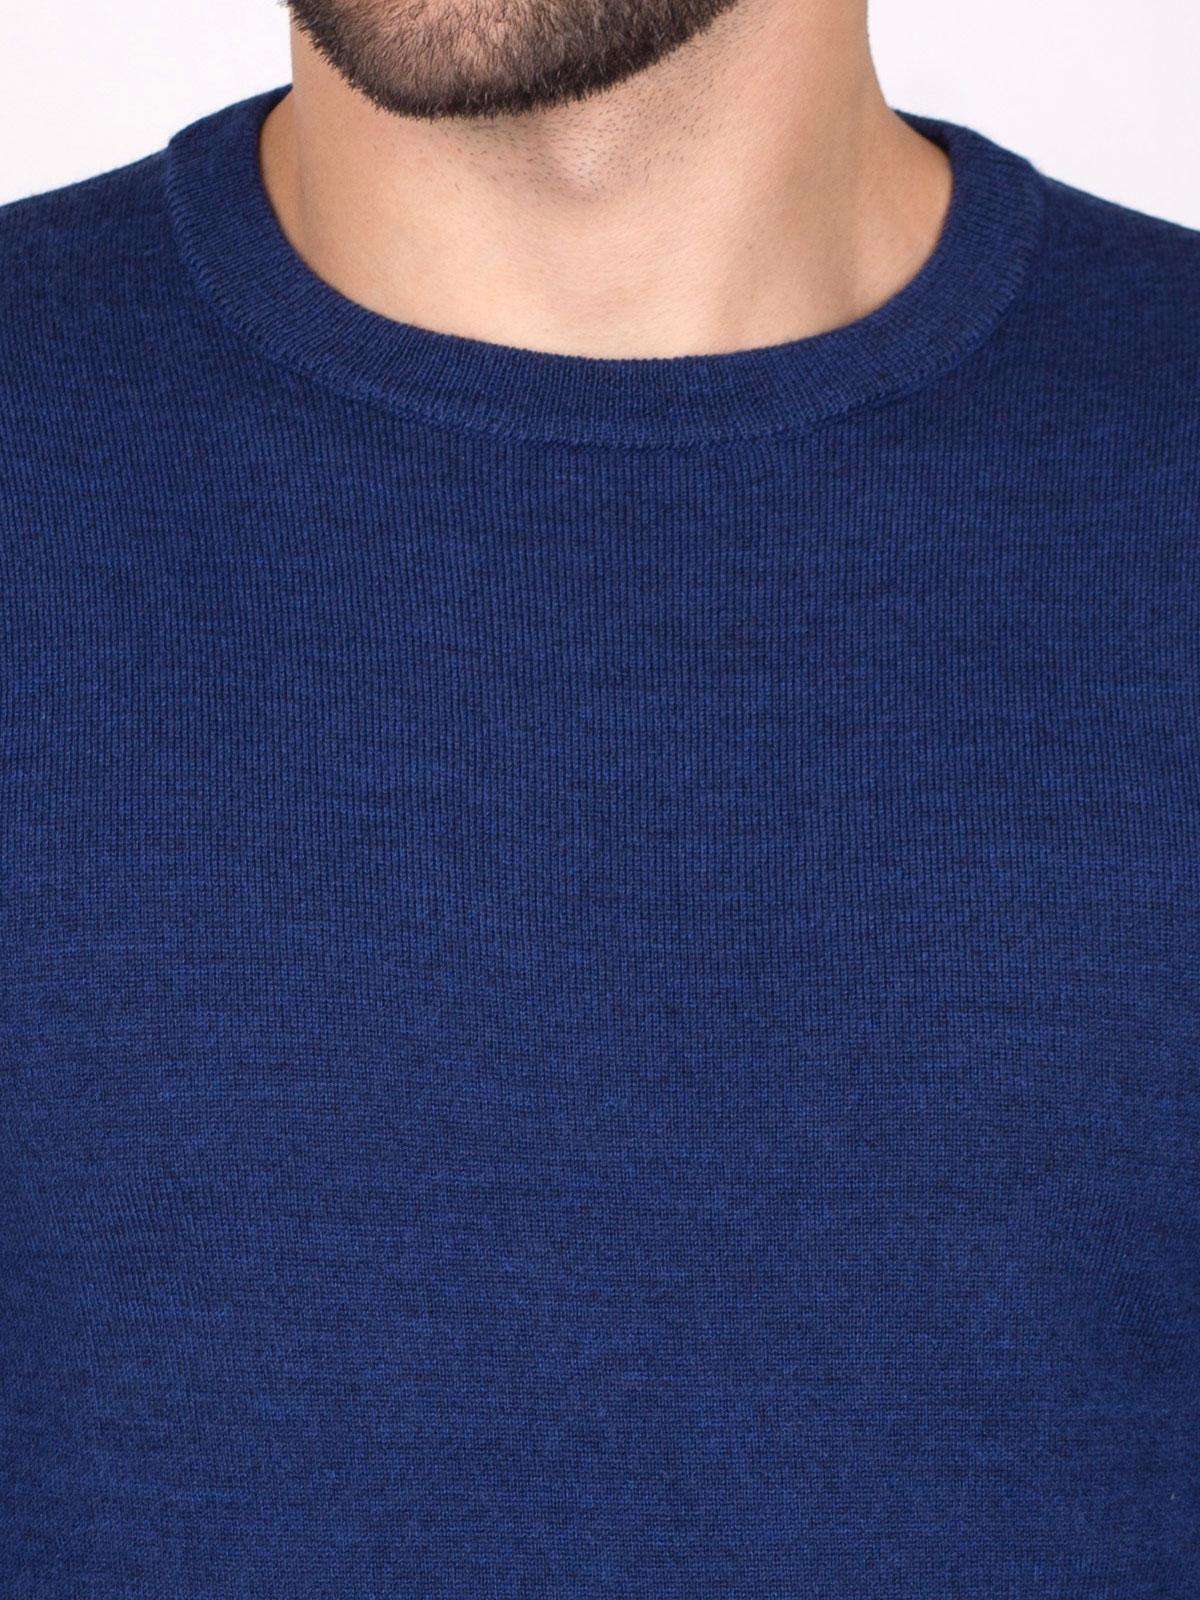 Мъжки пуловер в синьо - 33086 89.00 лв img2